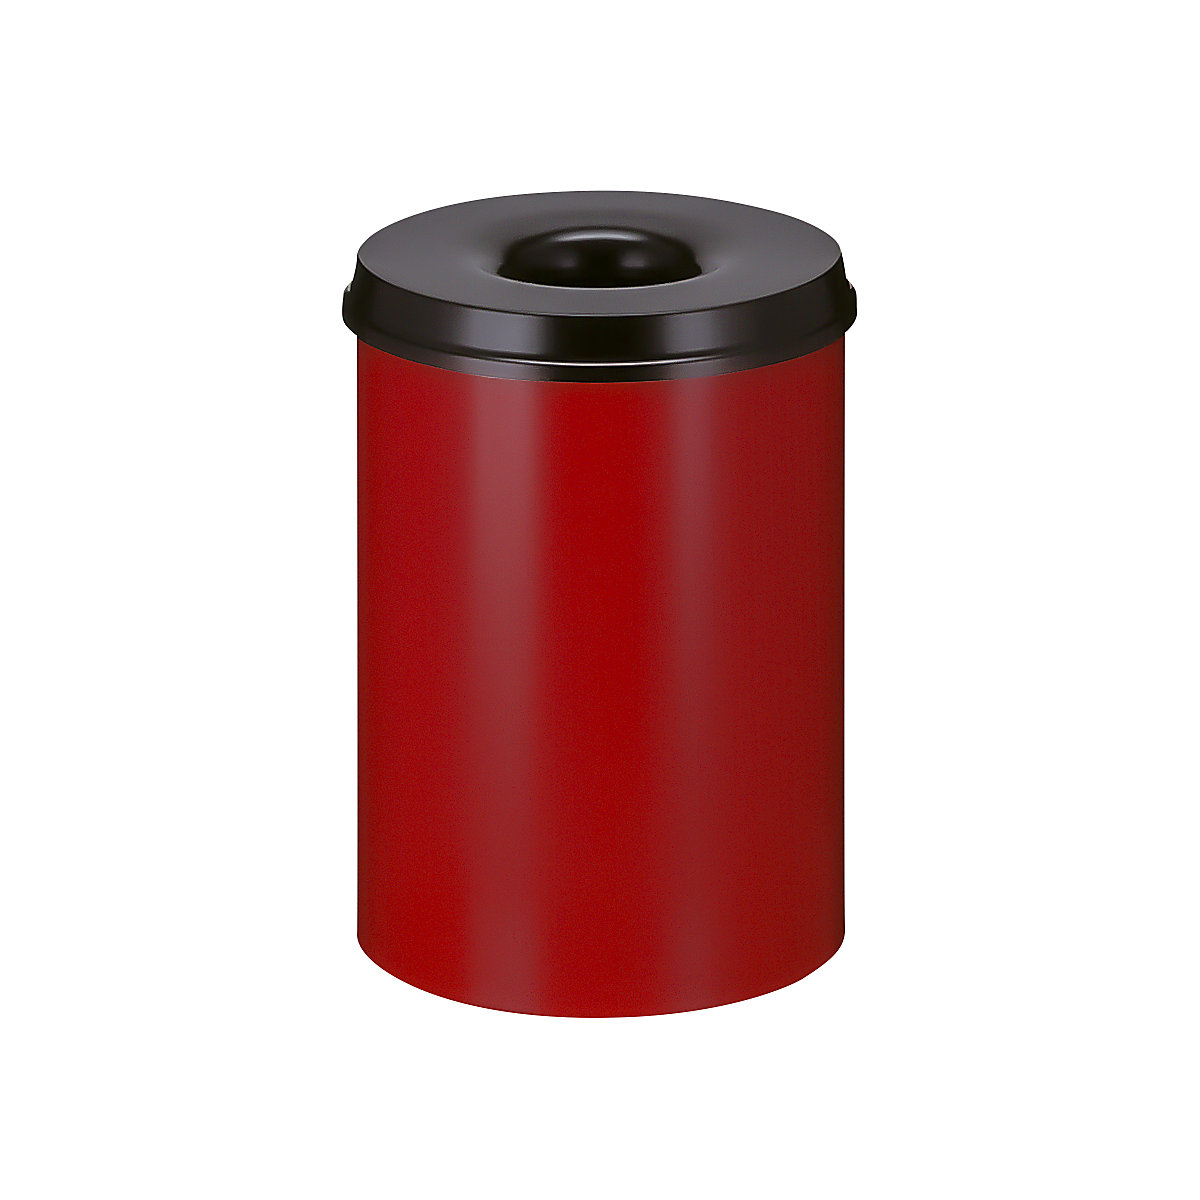 Sicherheits-Papierkorb, Stahl, selbstlöschend, Volumen 30 l, HxØ 470 x 335 mm, Korpus rot / Löschkopf schwarz-11